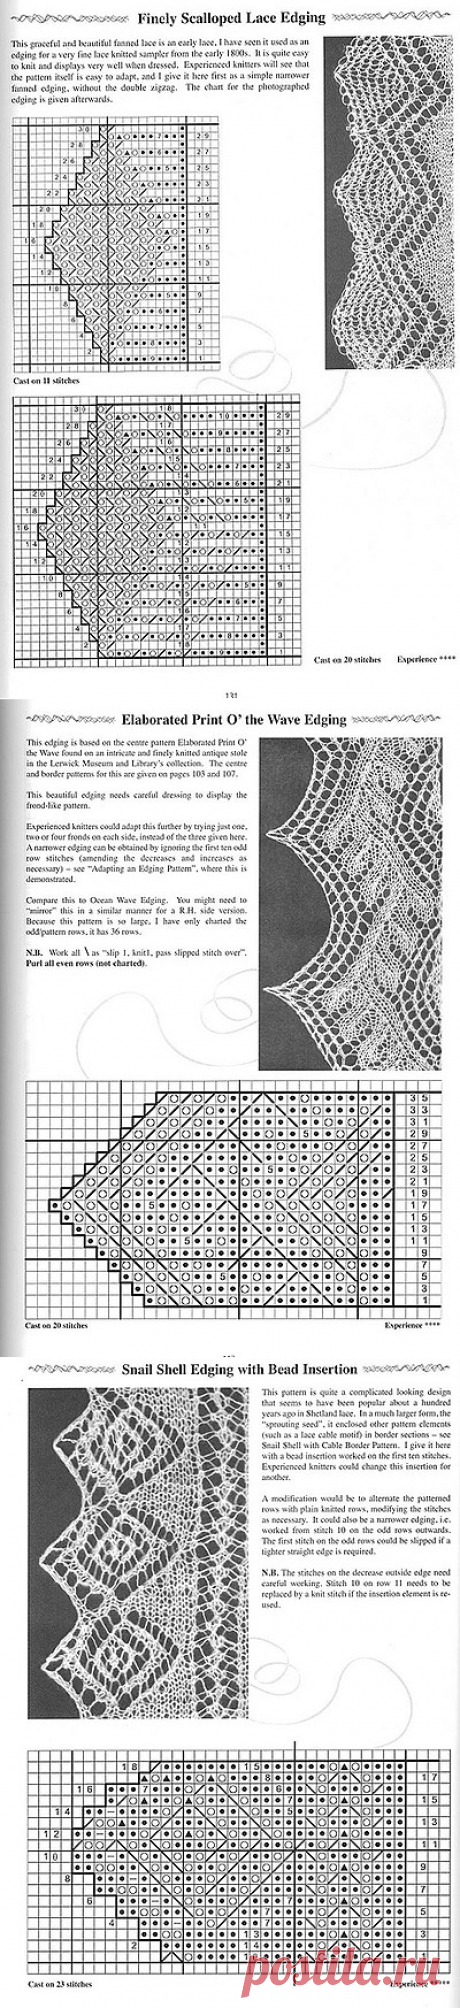 Вязание. Коллекция узоров каймы для шалей спицами ( 34 узора).